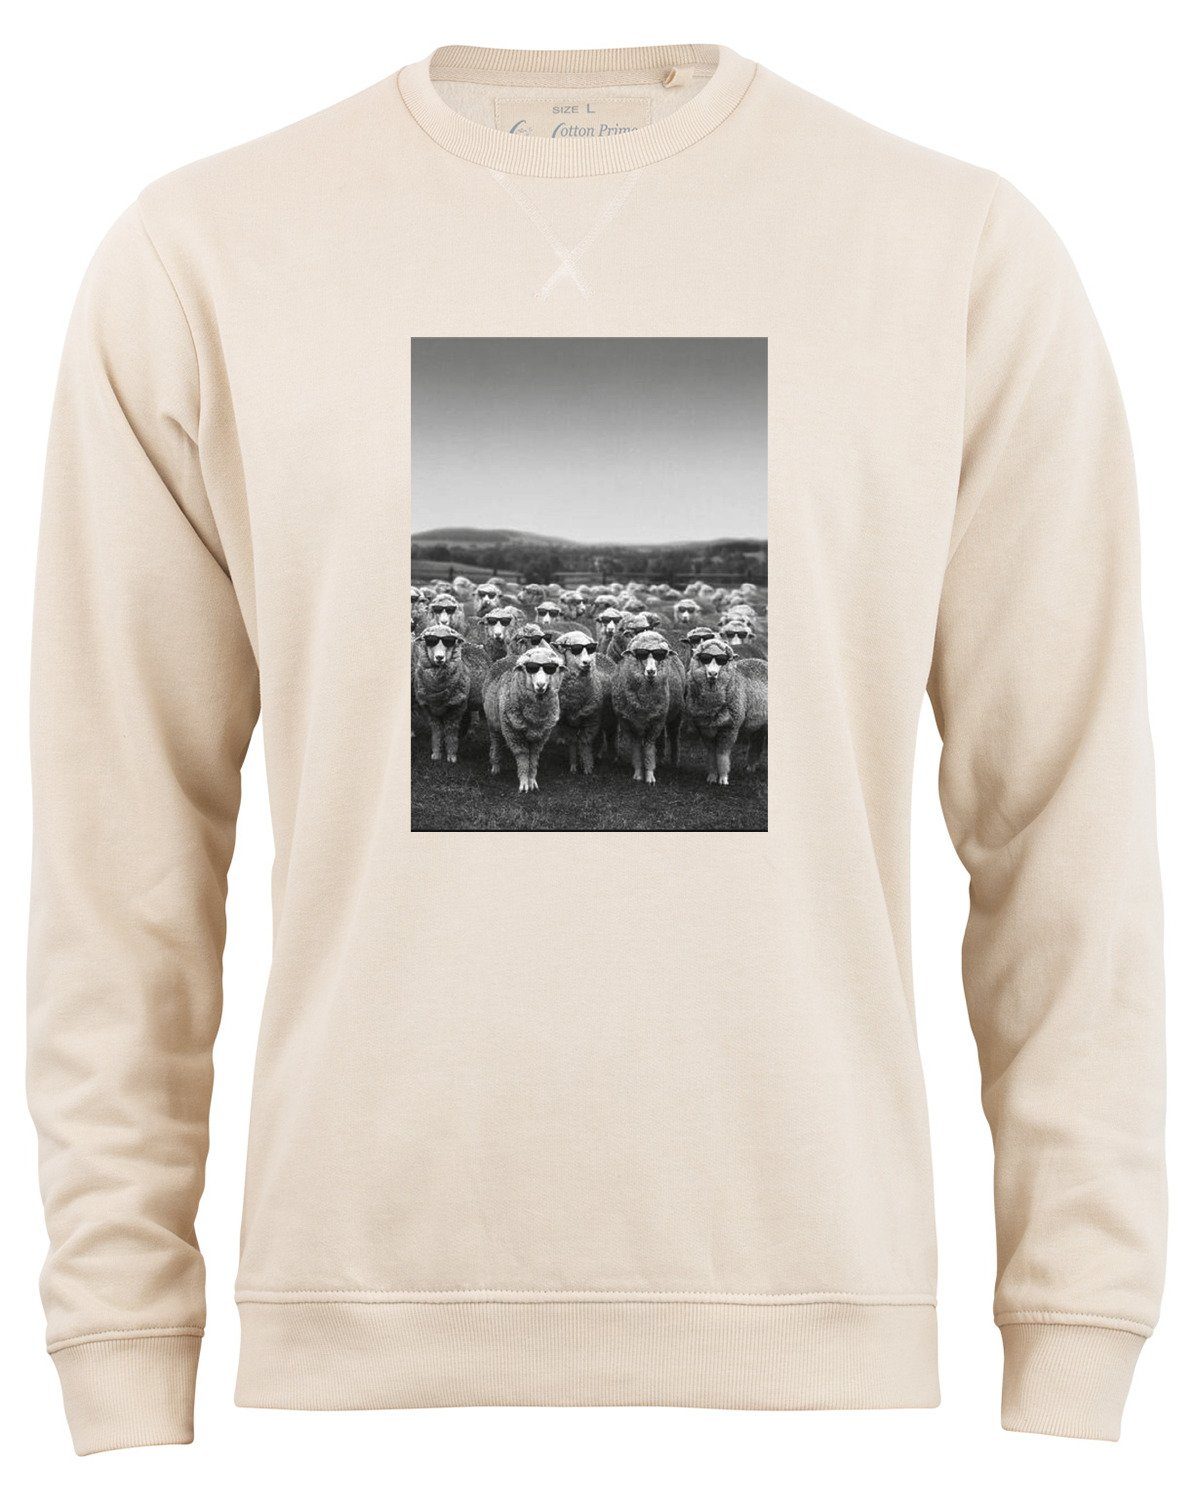 Cotton Prime® Sweatshirt mit weichem Beige Innenfleece